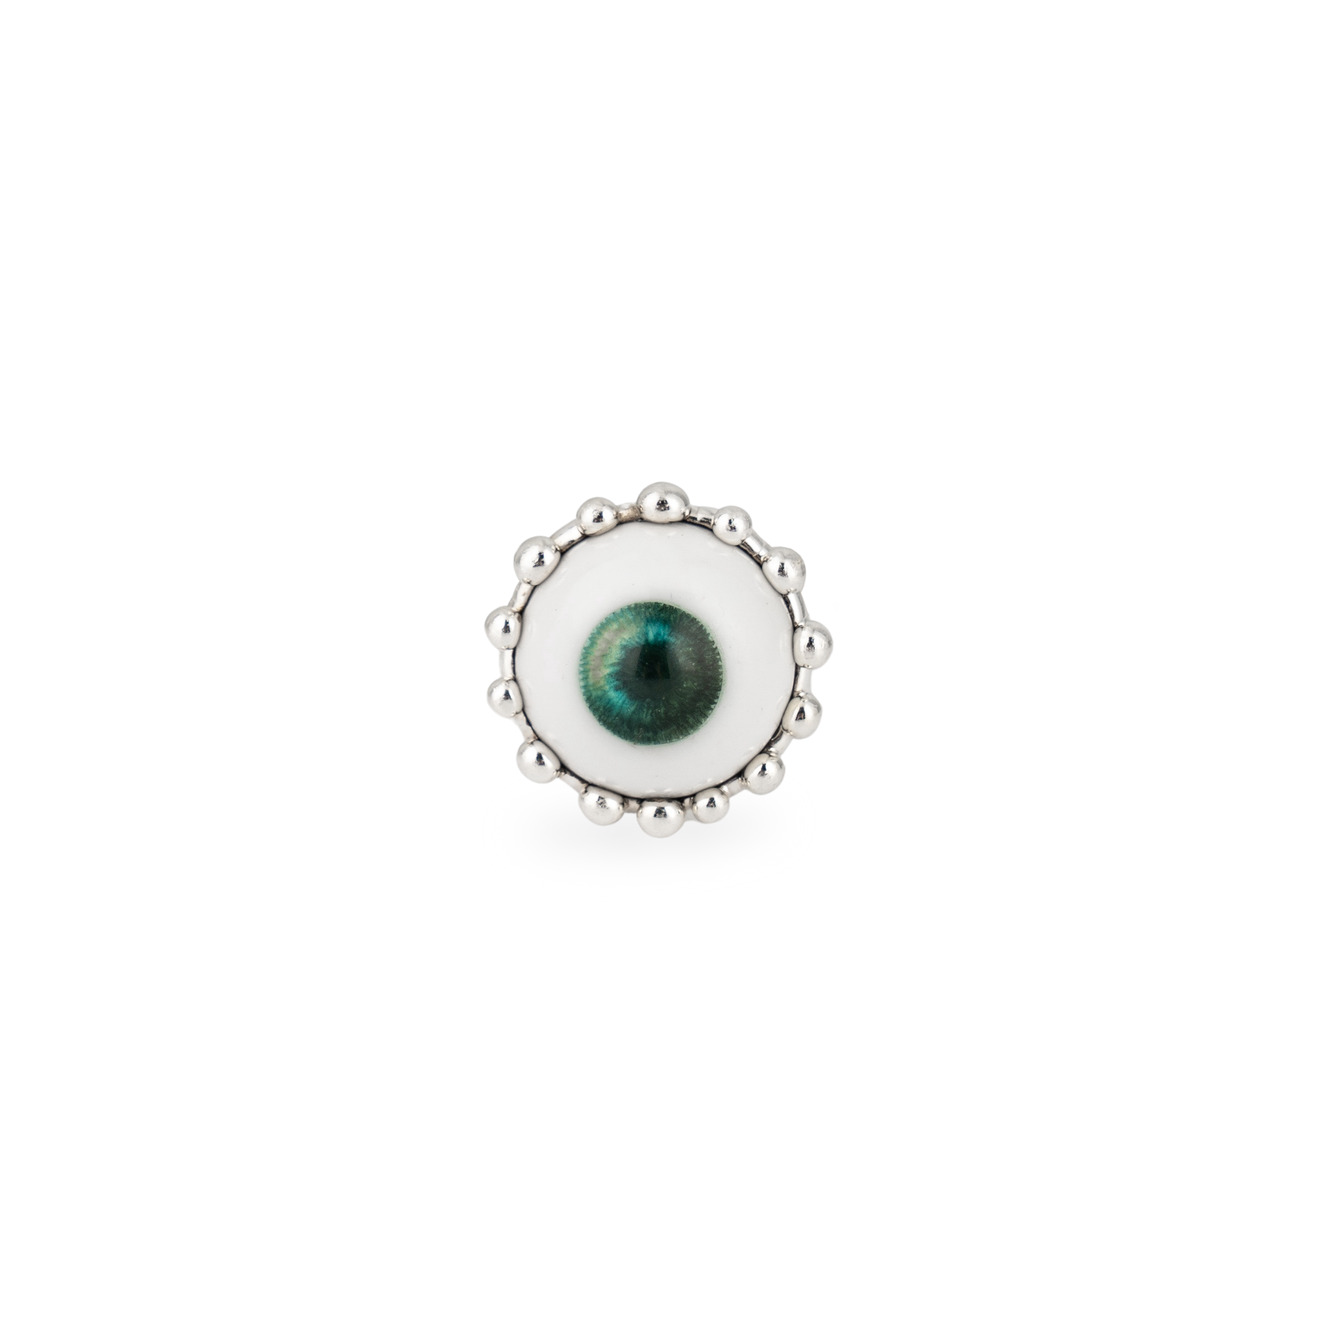 Poison Drop Lab Кольцо с зелёным глазом poison drop lab кольцо с серебряным покрытием с нарисованным глазом